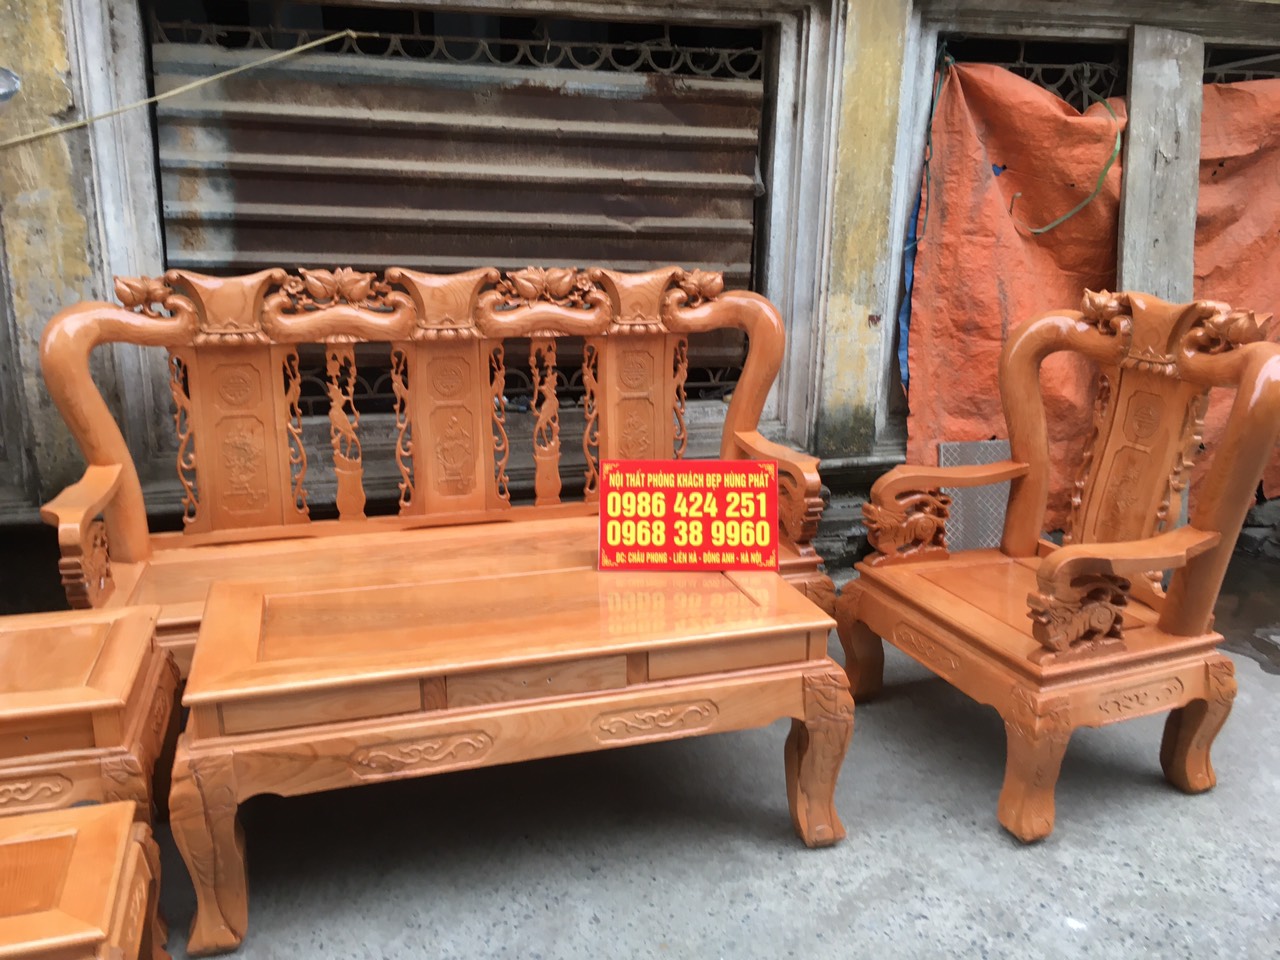 Bộ bàn ghế Minh Quốc Đào gỗ sồi từ Lazada.vn sẽ là một lựa chọn vô cùng tuyệt vời cho những người yêu thích vẻ đẹp cổ điển. Được chế tác bởi những nghệ nhân tài năng, bộ bàn ghế này là một tác phẩm nghệ thuật đích thực.